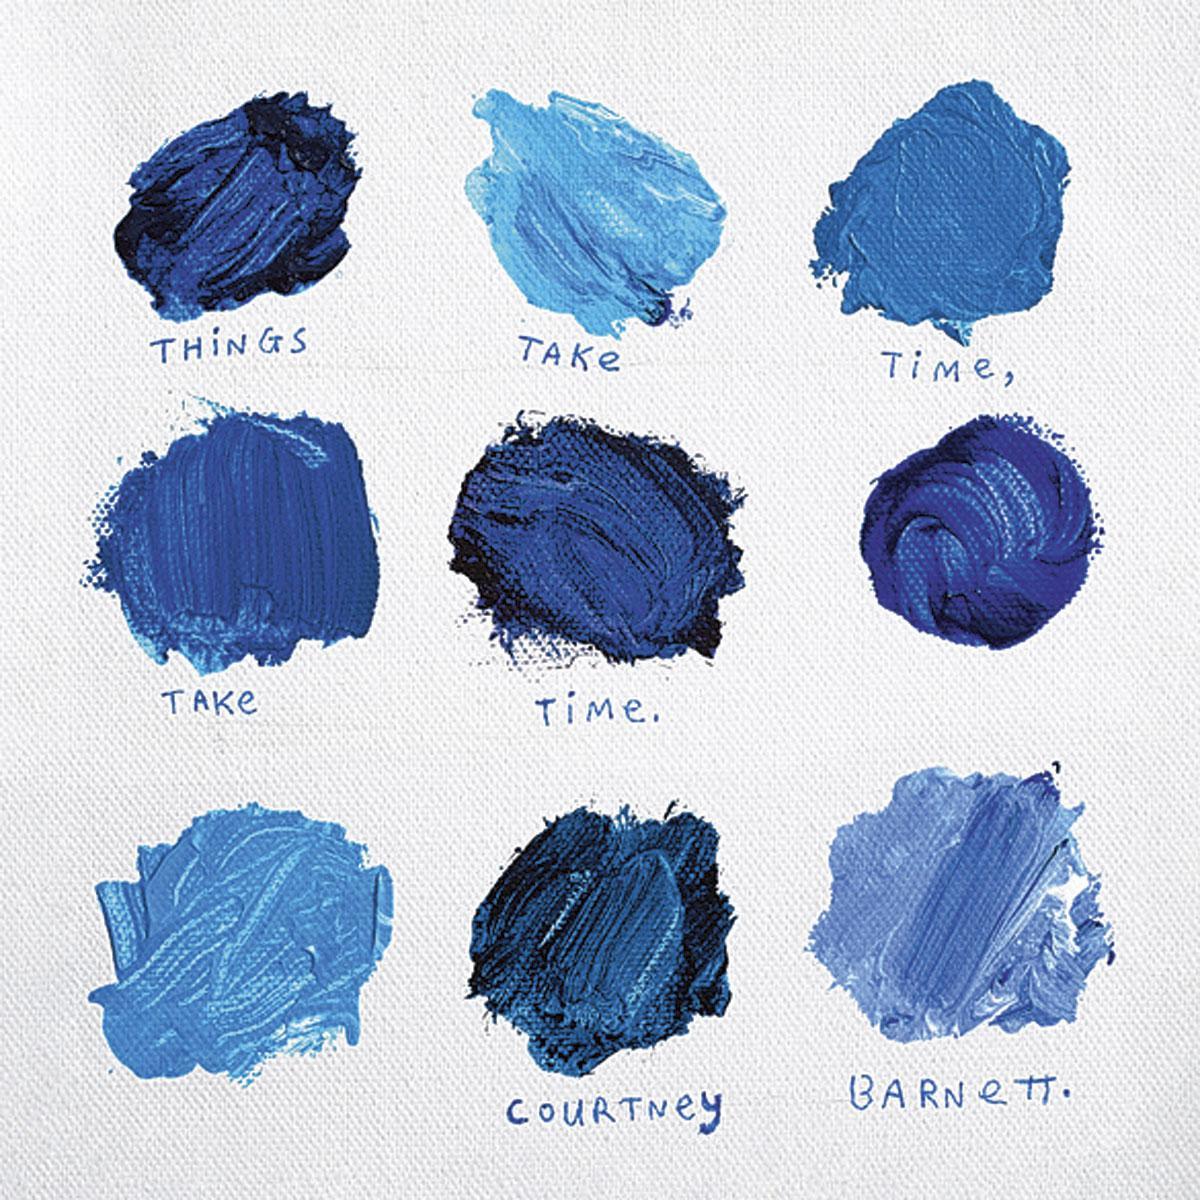 [l'album de la semaine] Courtney Barnett - Things Take Time, Take Time: éloge de la lenteur